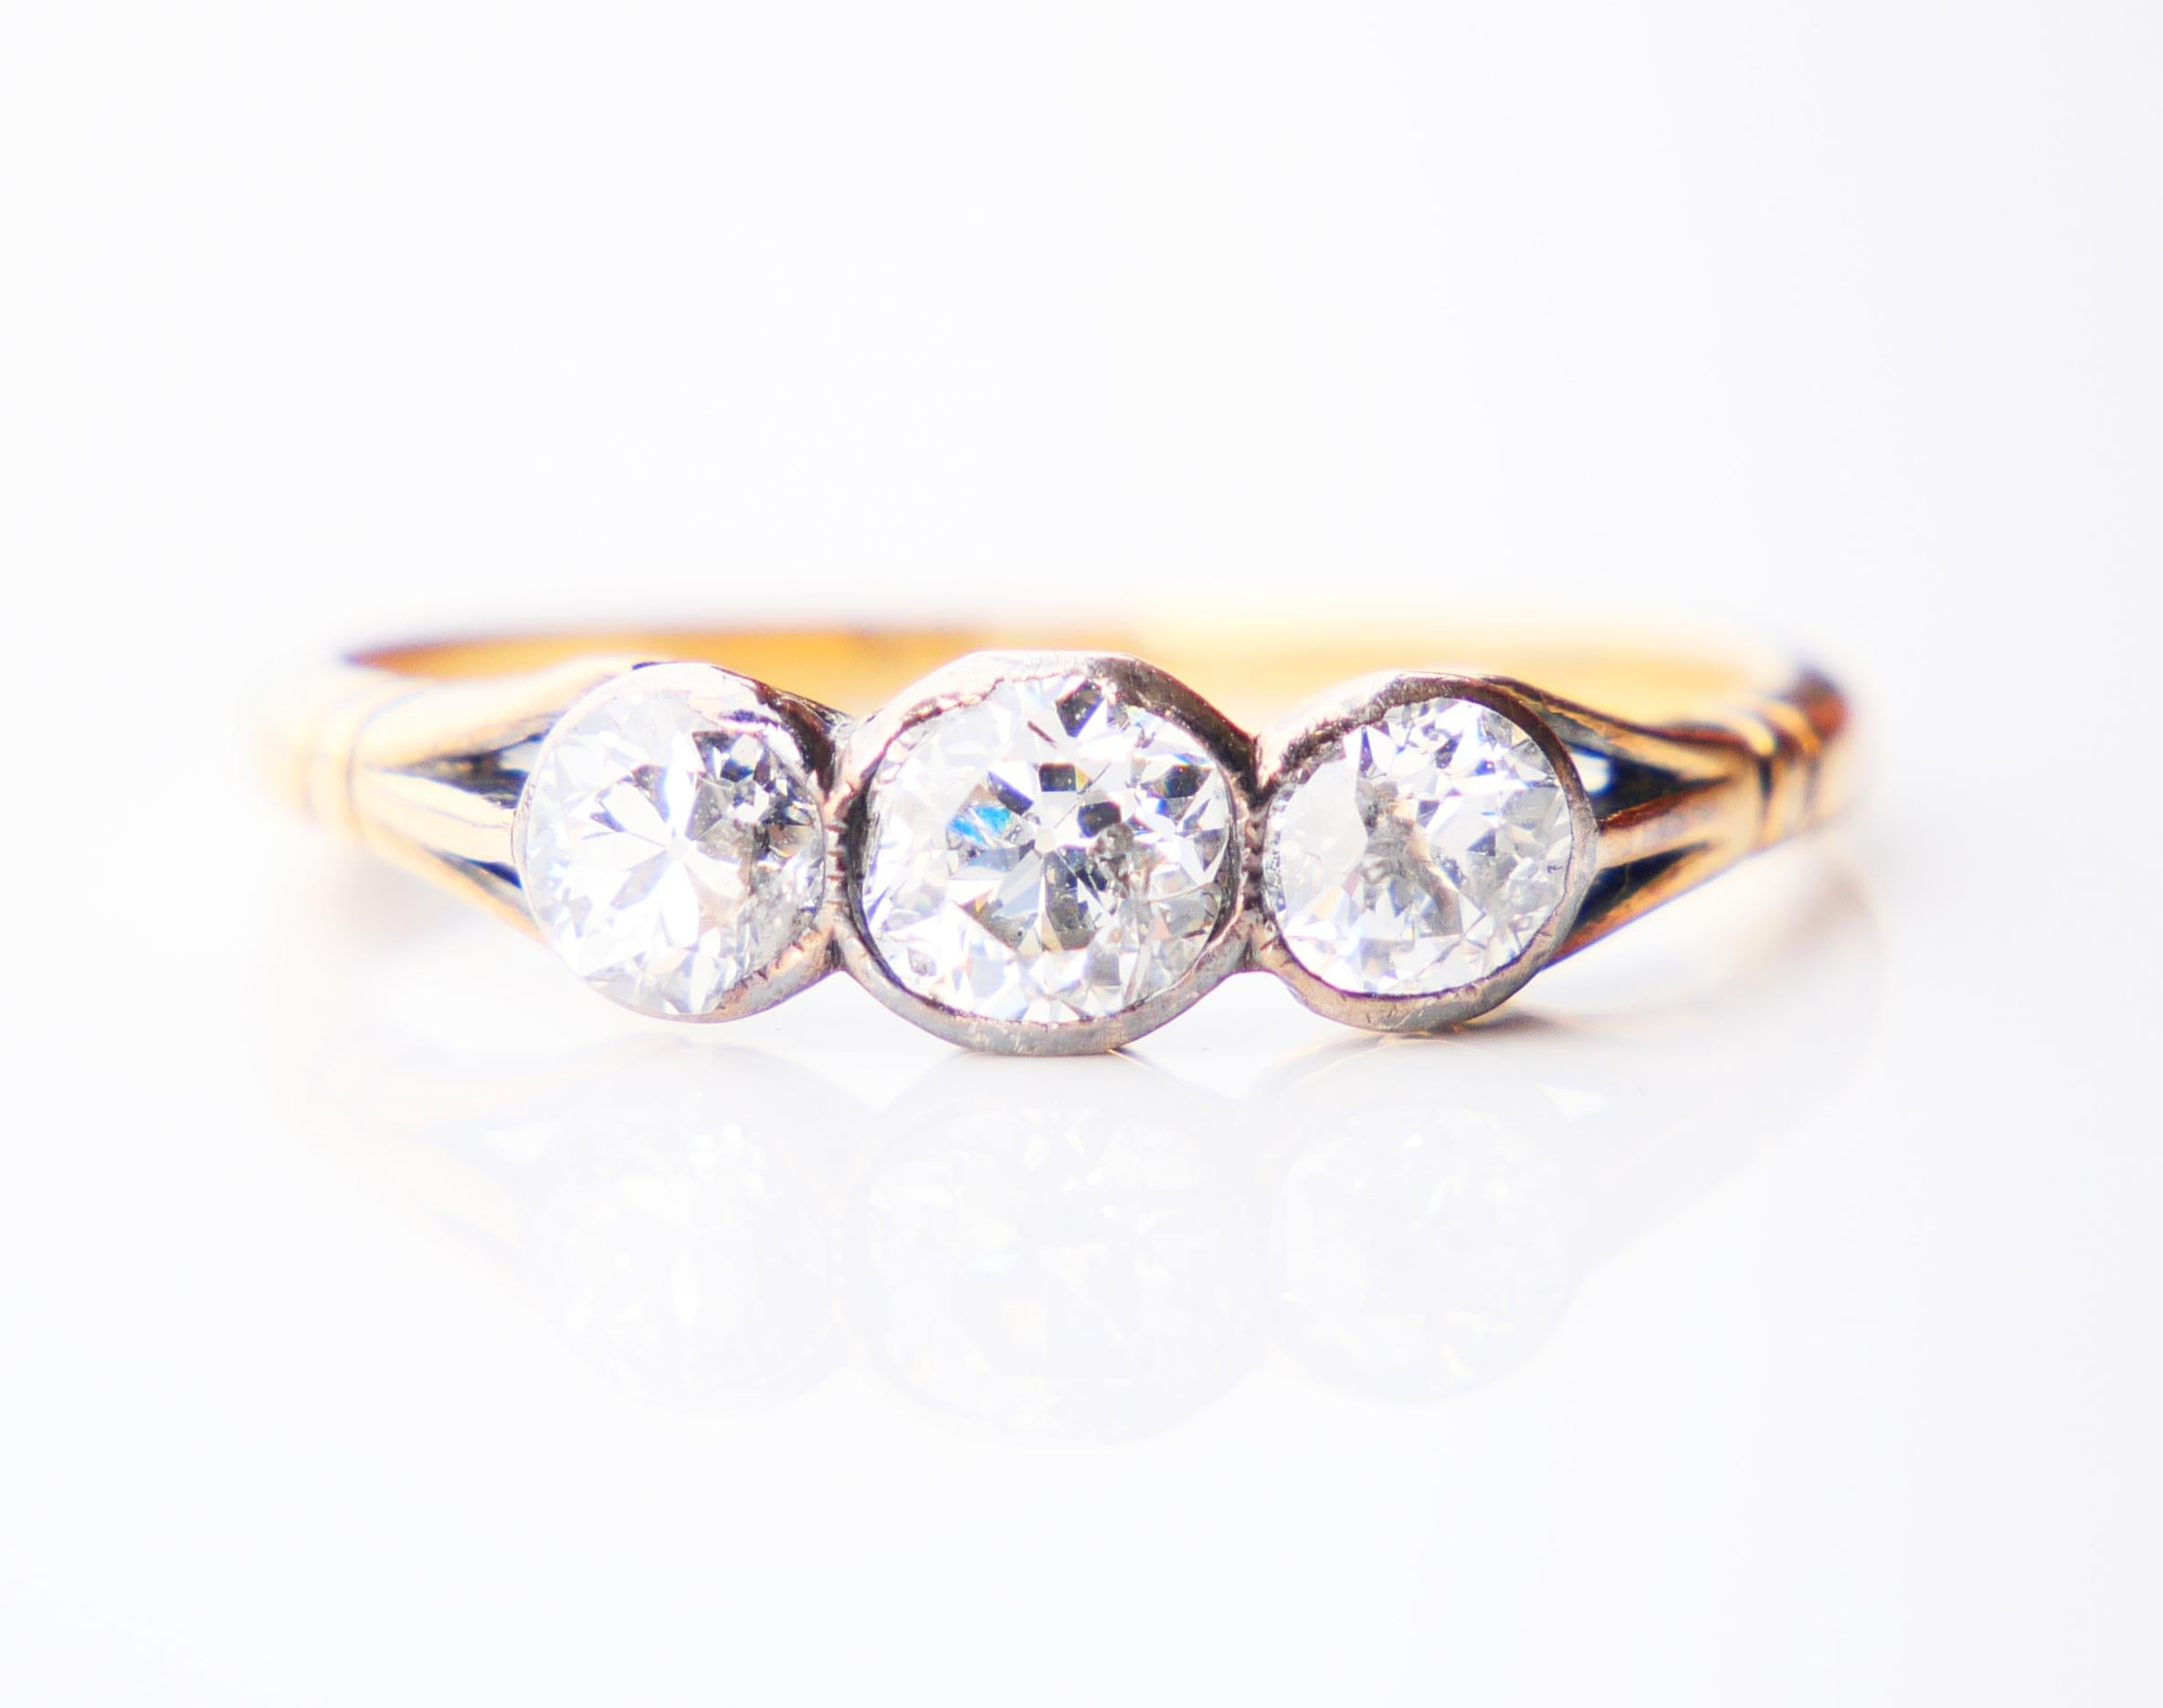 Alter Ring mit 3 alten Diamanten mit europäischem Schliff, Band aus massivem 18K Gelbgold (getestet) mit Silberclustern.

Keine Punzierungen hergestellt ca. 1900er -1920er Jahre

Größter zentraler Ovalschliff Diamant 5 mm x 4 mm x 3 / 0,5 ct; zwei